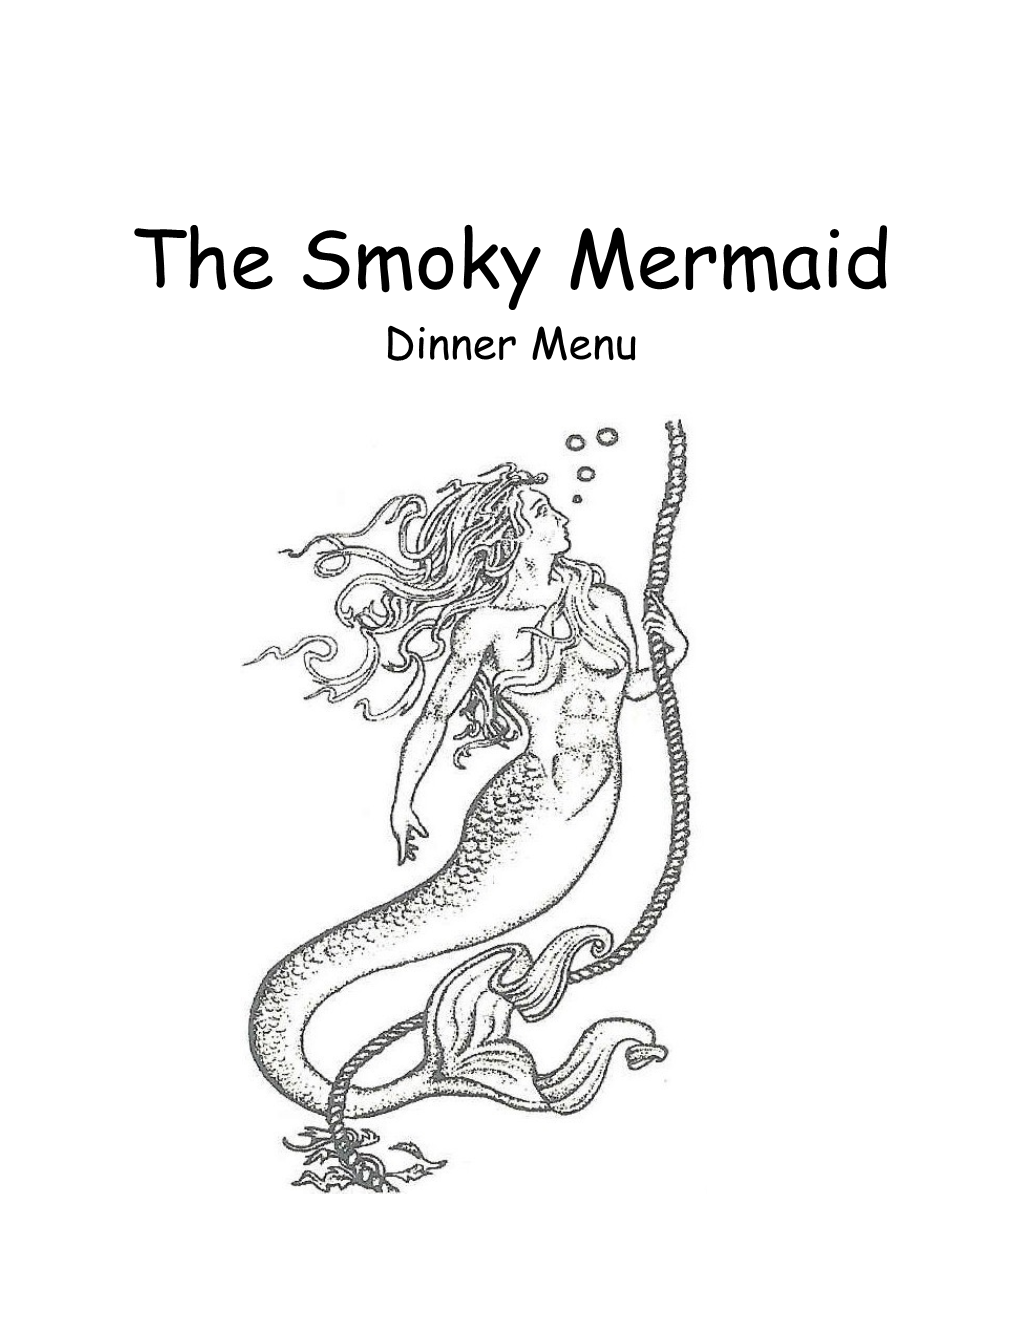 The Smoky Mermaid